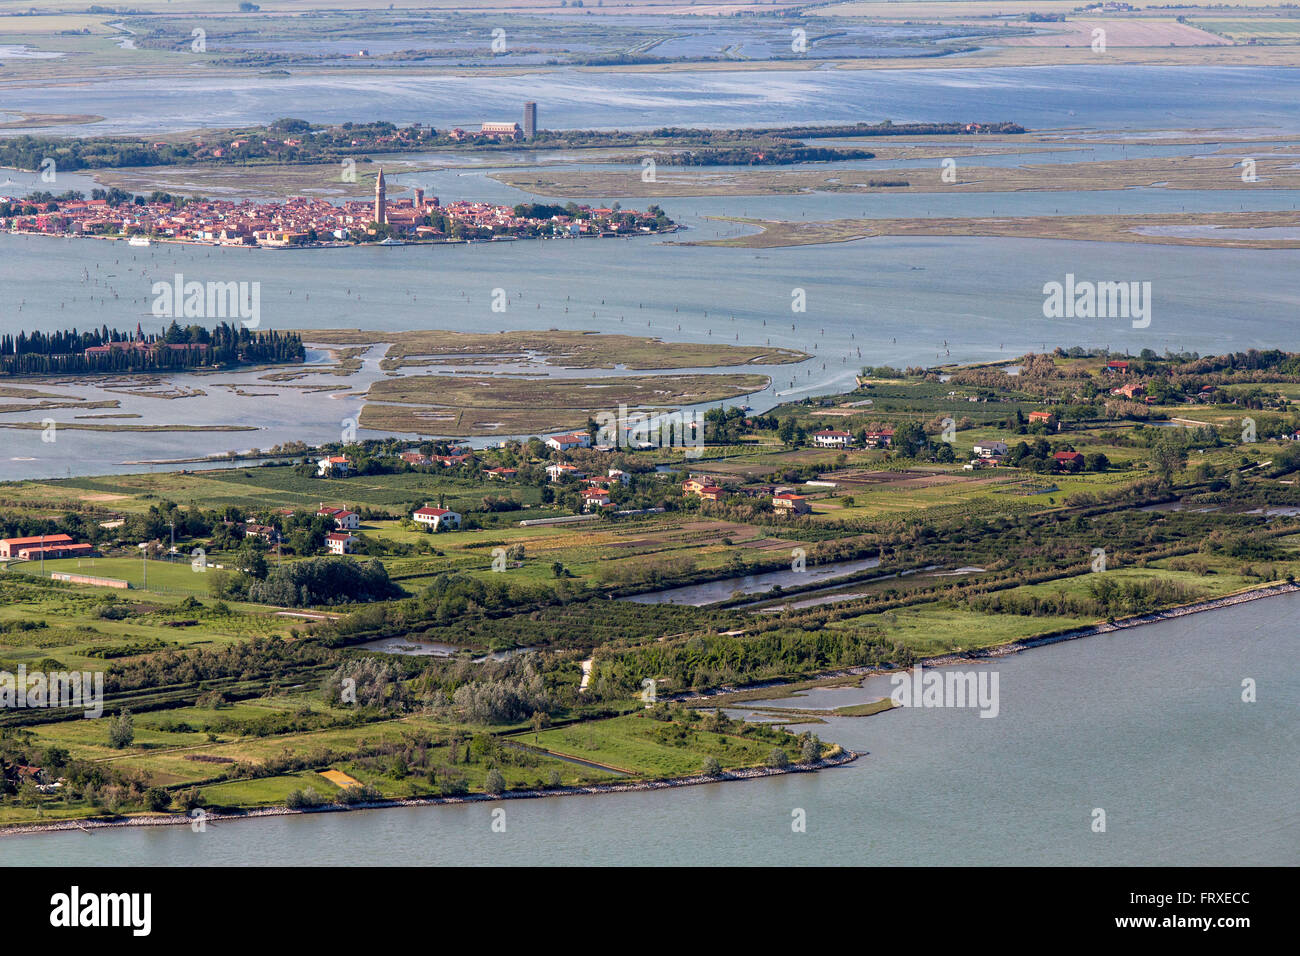 Luftaufnahme der Inseln in der Lagune von Venedig, Insel von Sant' Erasmo mit Burano und Torcello in den Hintergrund, Veneto, Italien Stockfoto